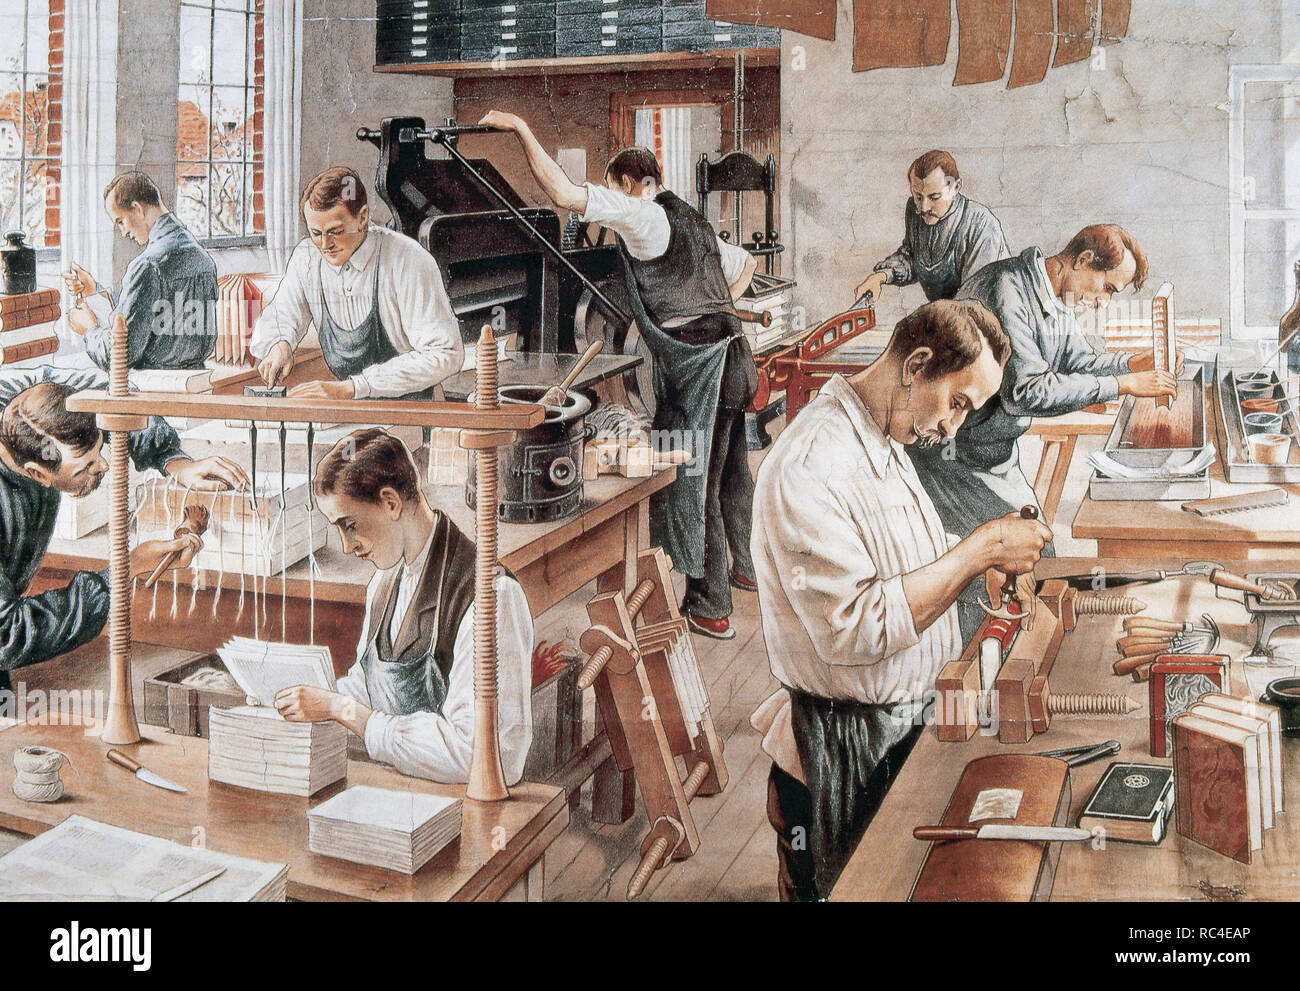 Les travailleurs d'un atelier de reliure. Lithographie du xixe siècle. Banque D'Images